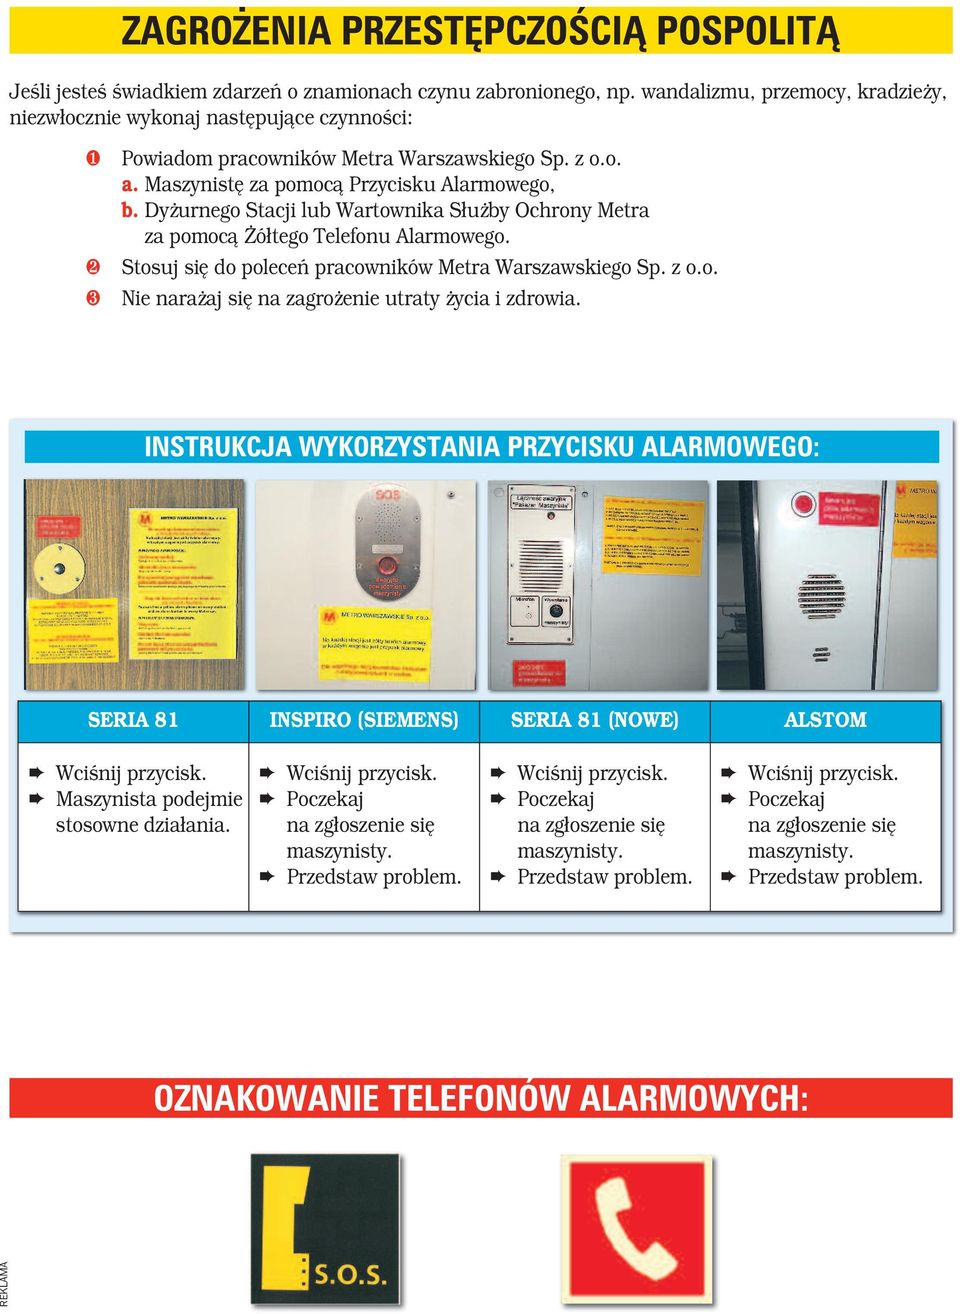 Maszynistę za pomocą Przycisku Alarmowego, b. Dyżurnego Stacji lub Wartownika Służby Ochrony Metra za pomocą Żółtego Telefonu Alarmowego.